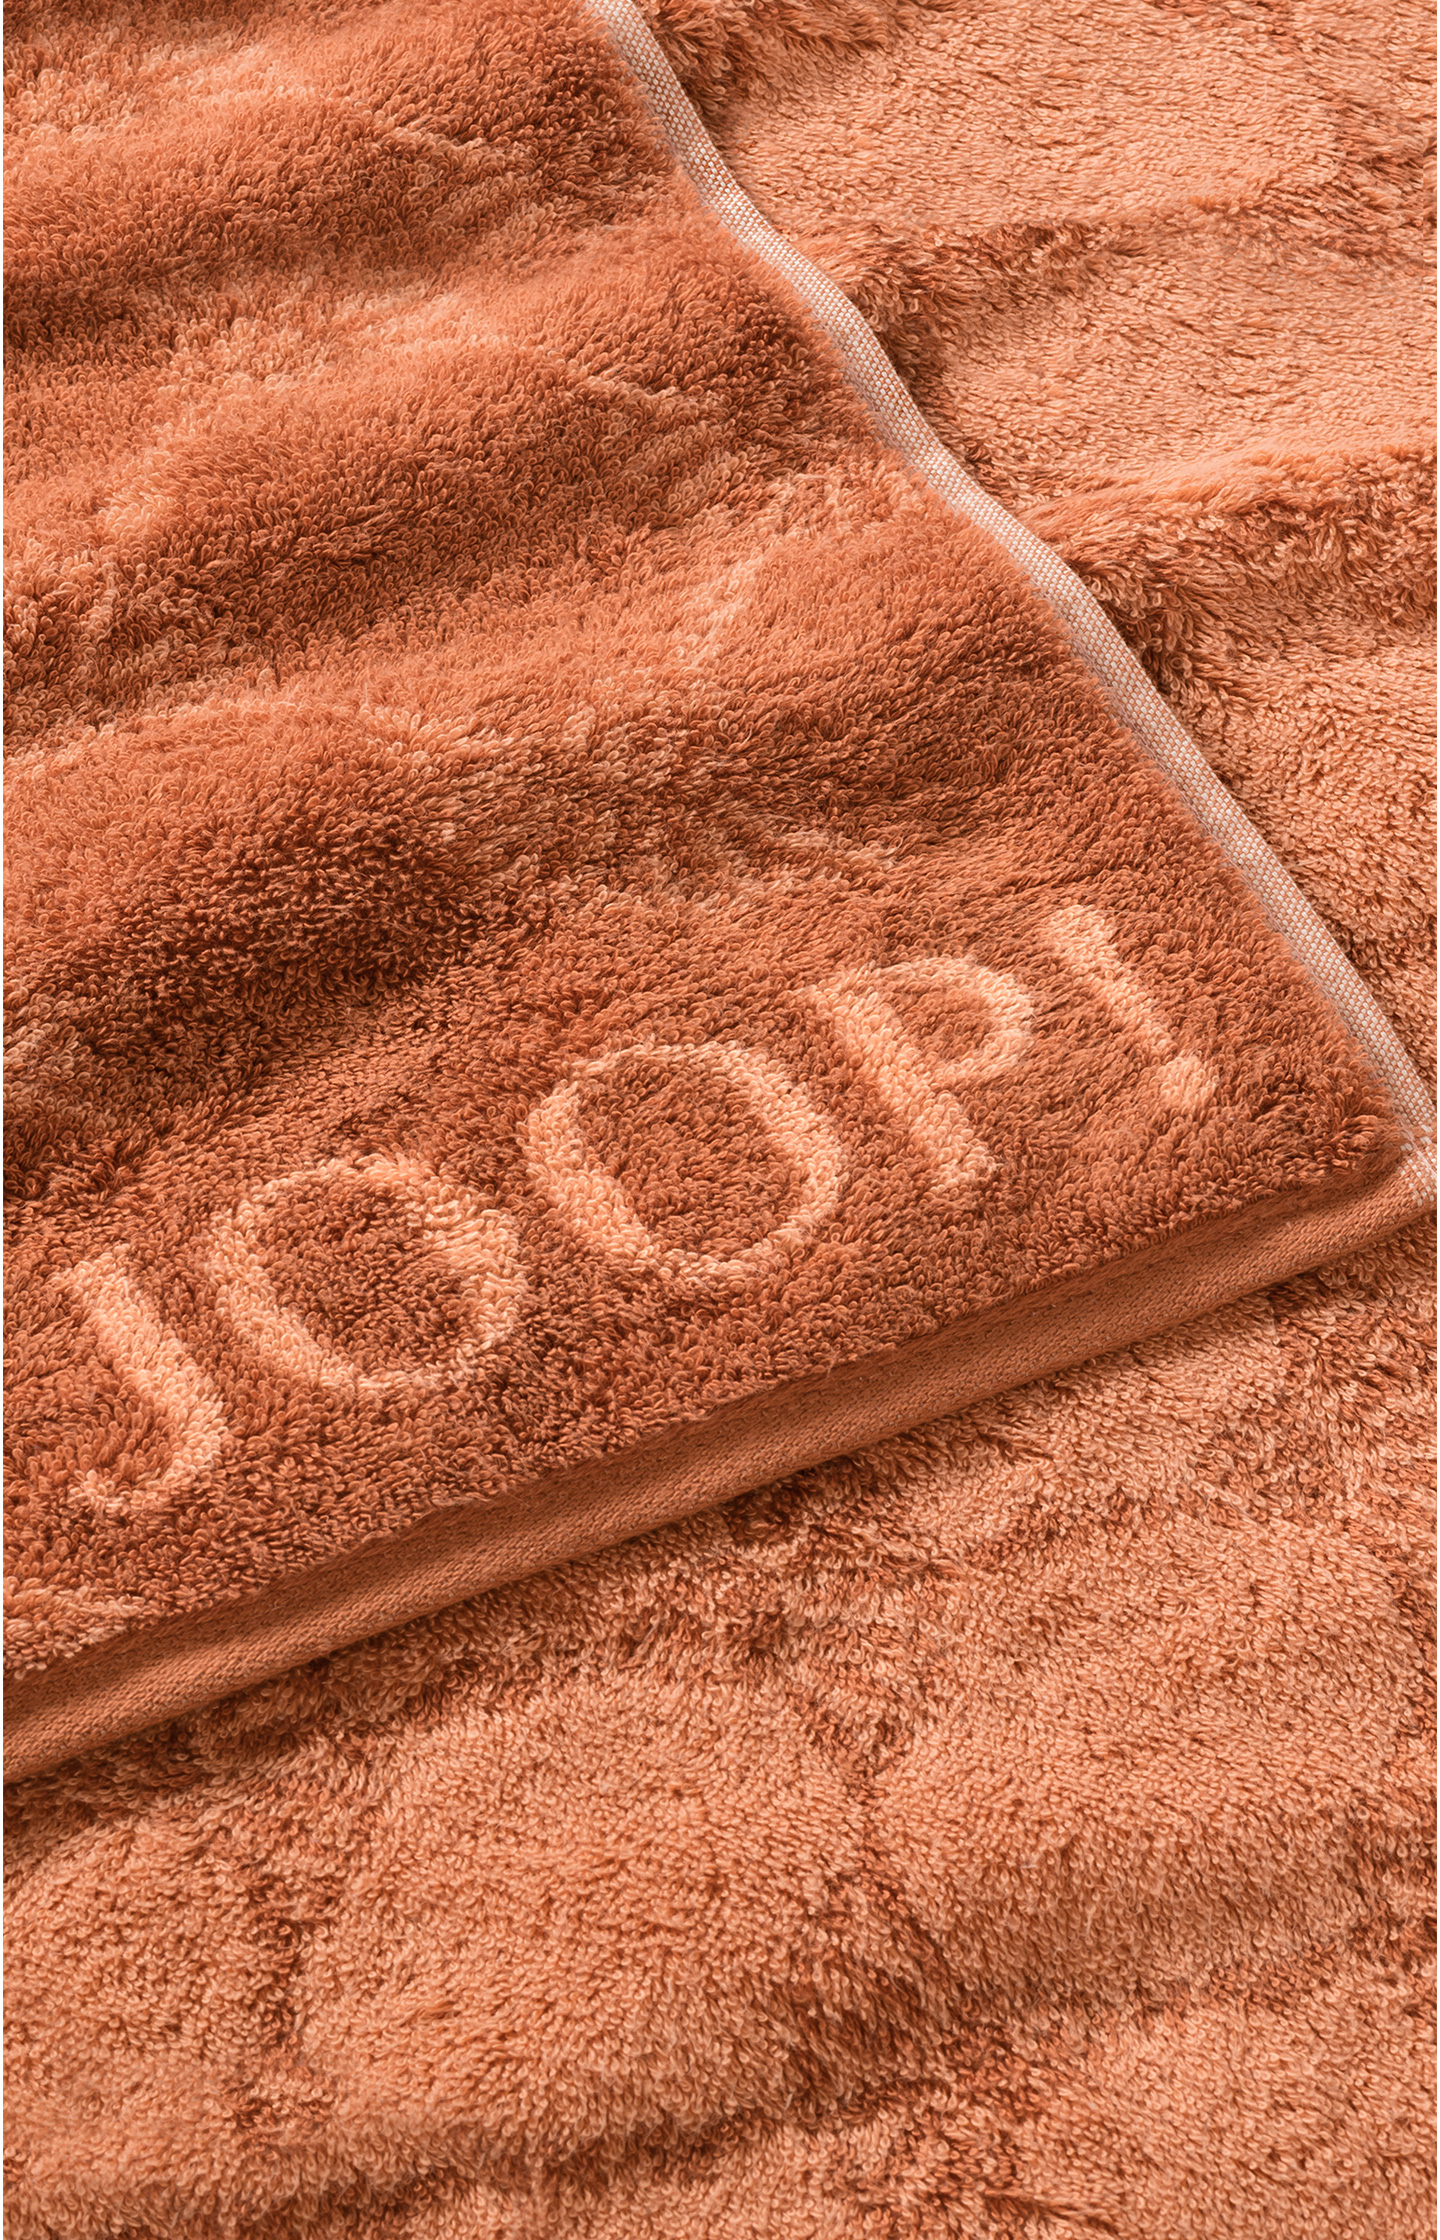 JOOP! CLASSIC CORNFLOWER face cloth the JOOP! copper Shop in Online in 